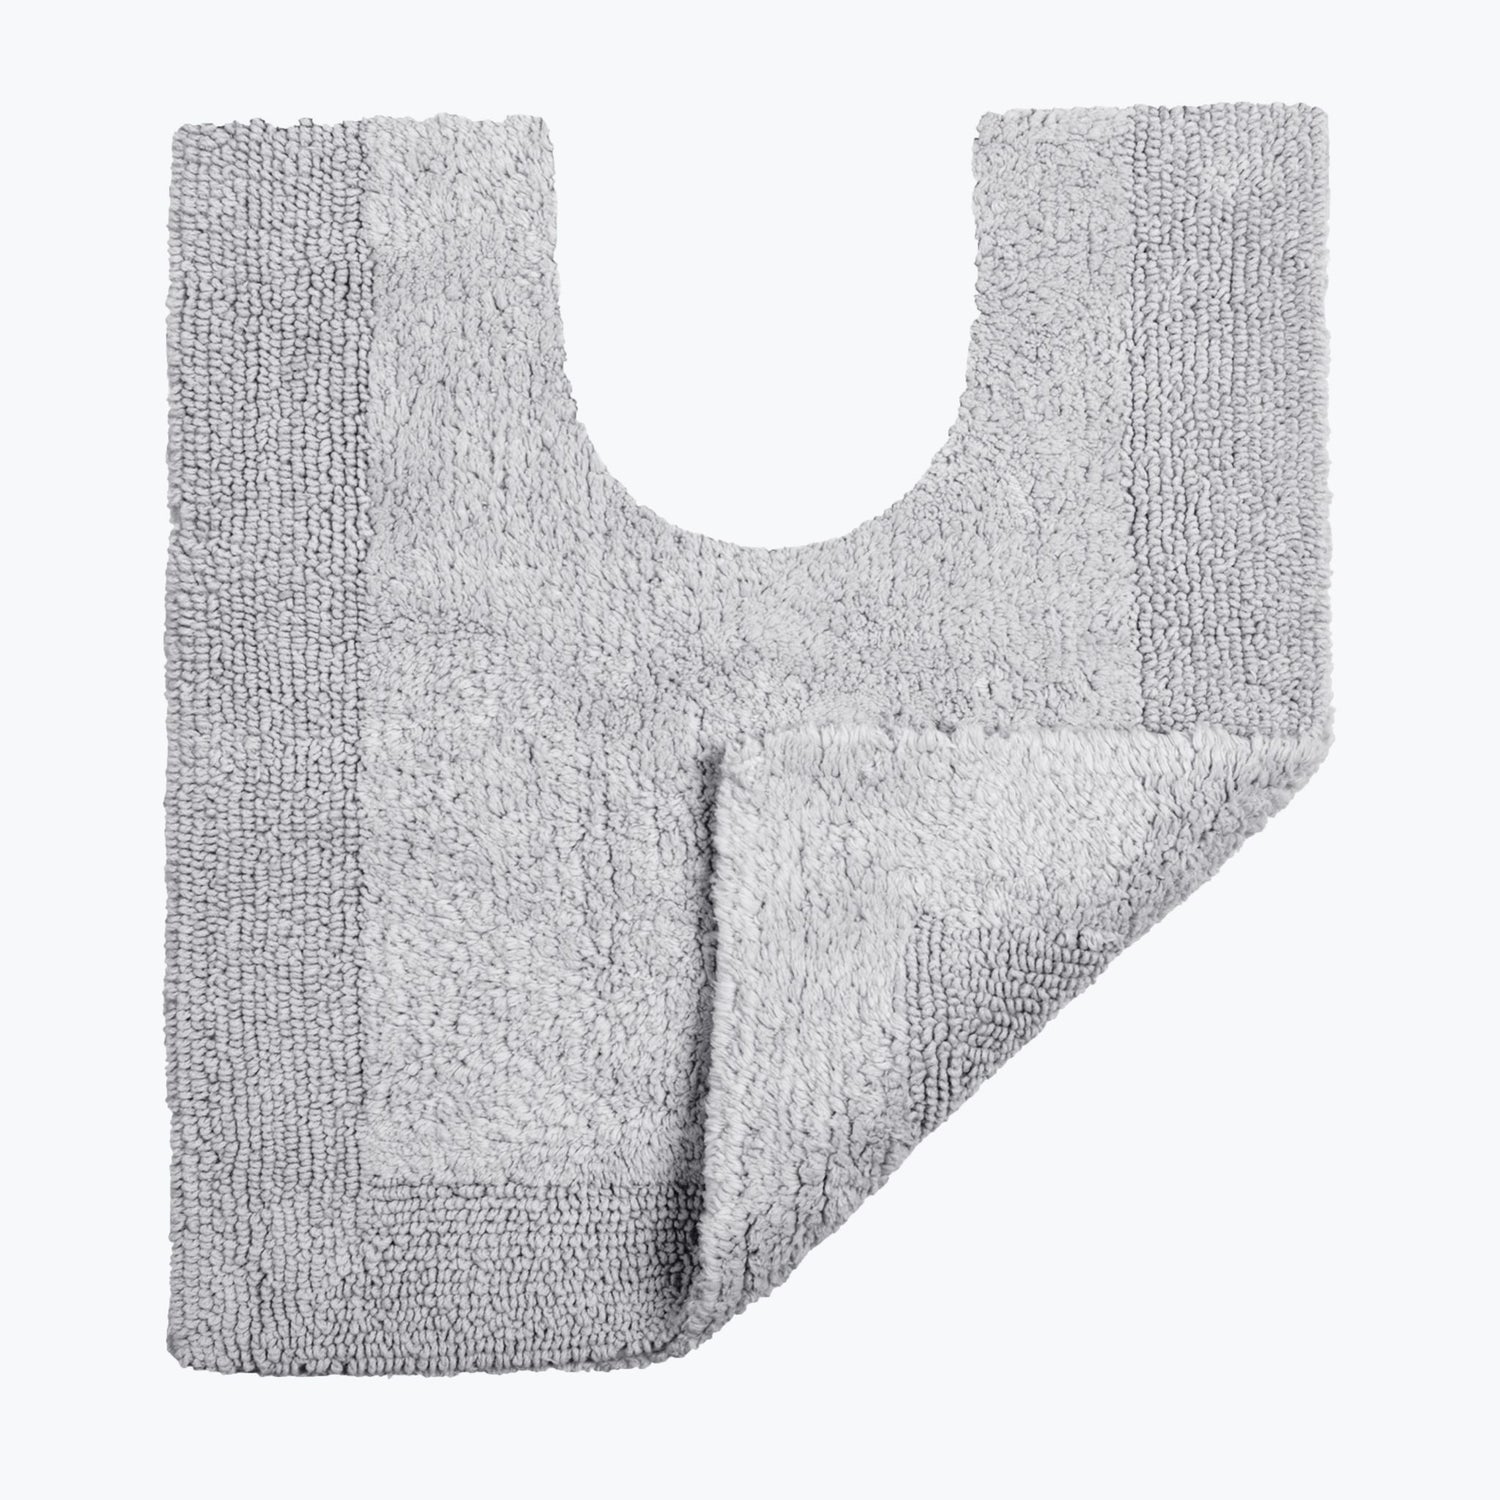 Dove Grey Reversible Toilet Mat - Super Soft Cotton Pedestal Mat